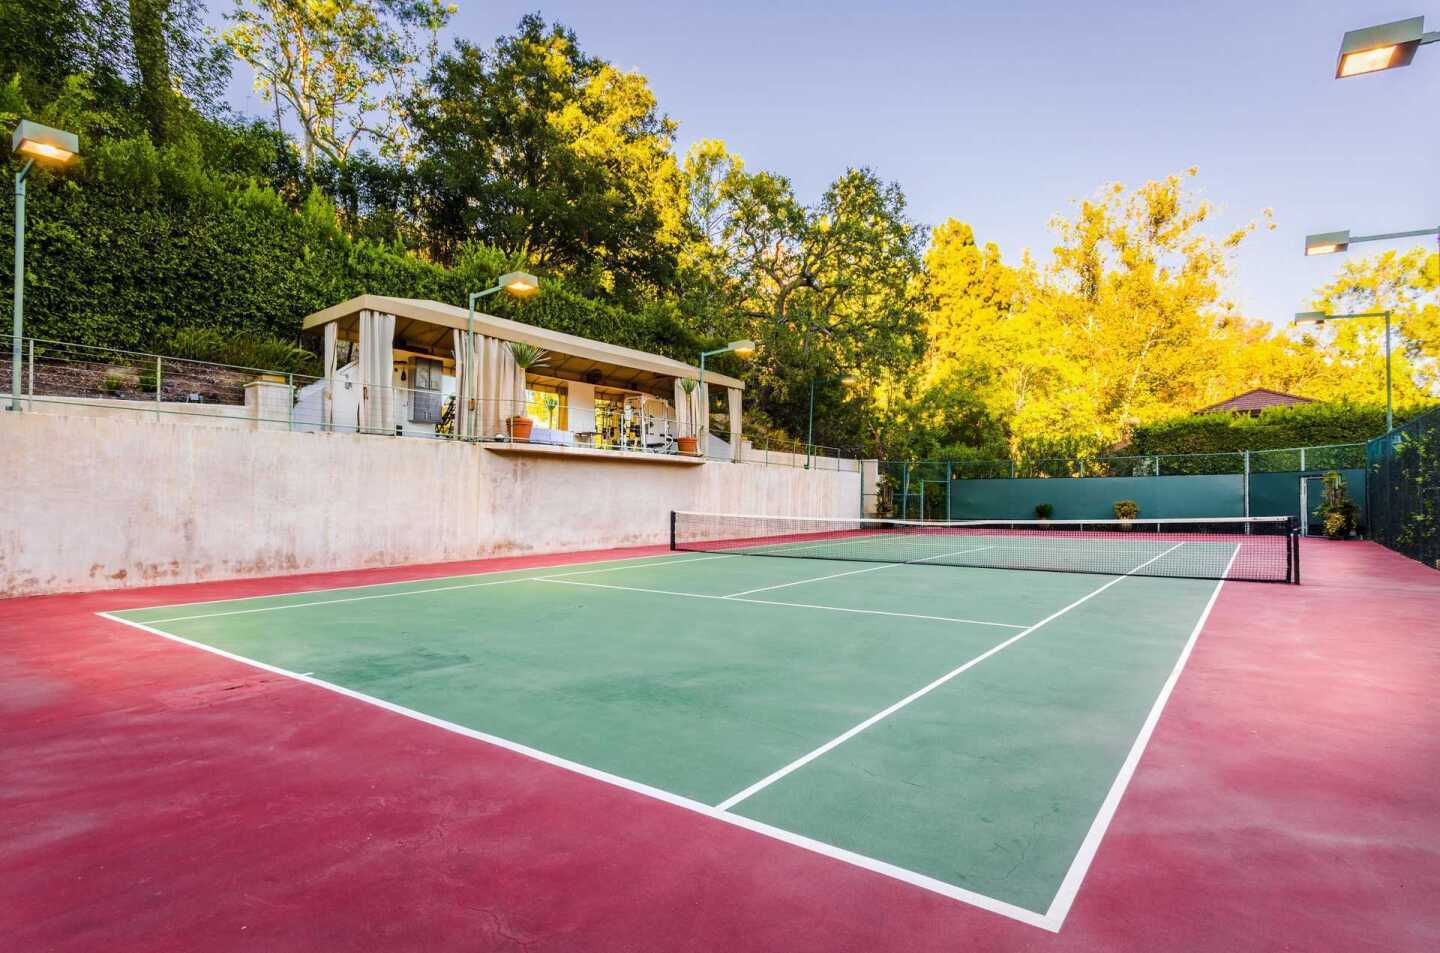 Chris Pratt and Anna Faris' marital home: the tennis court